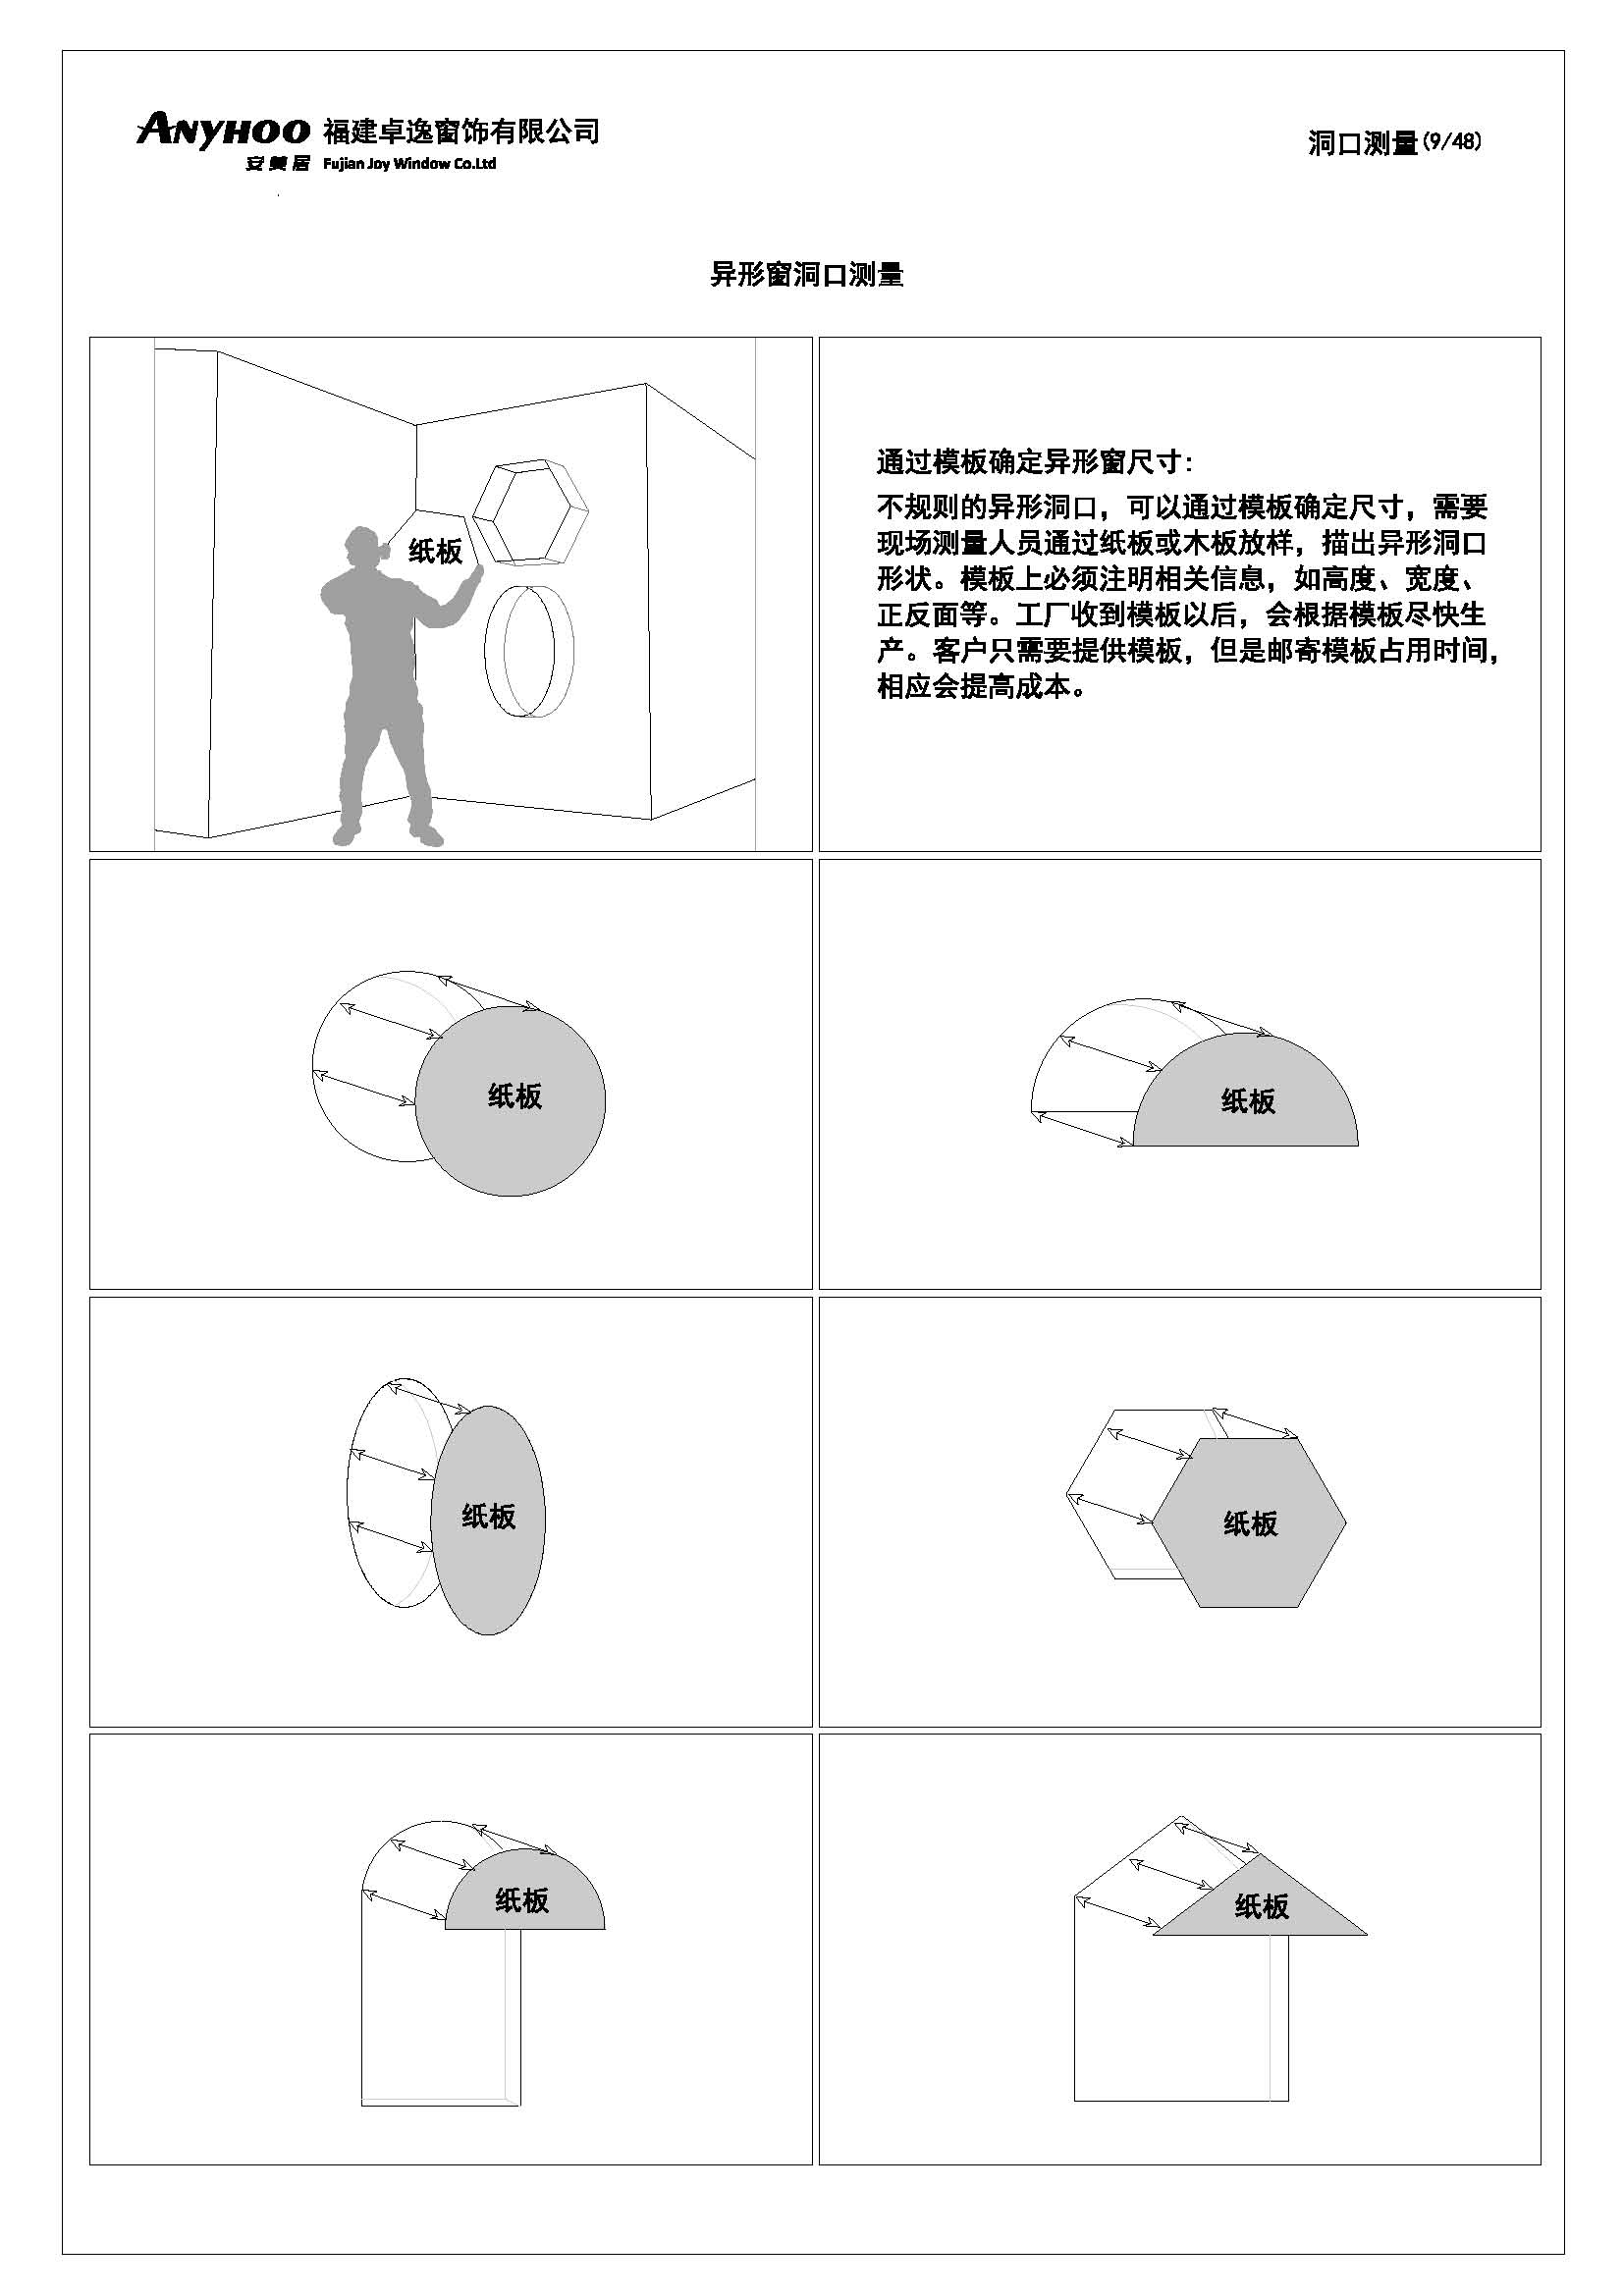 anyhoo技术手册中文版20190711(1)_页面_09.jpg